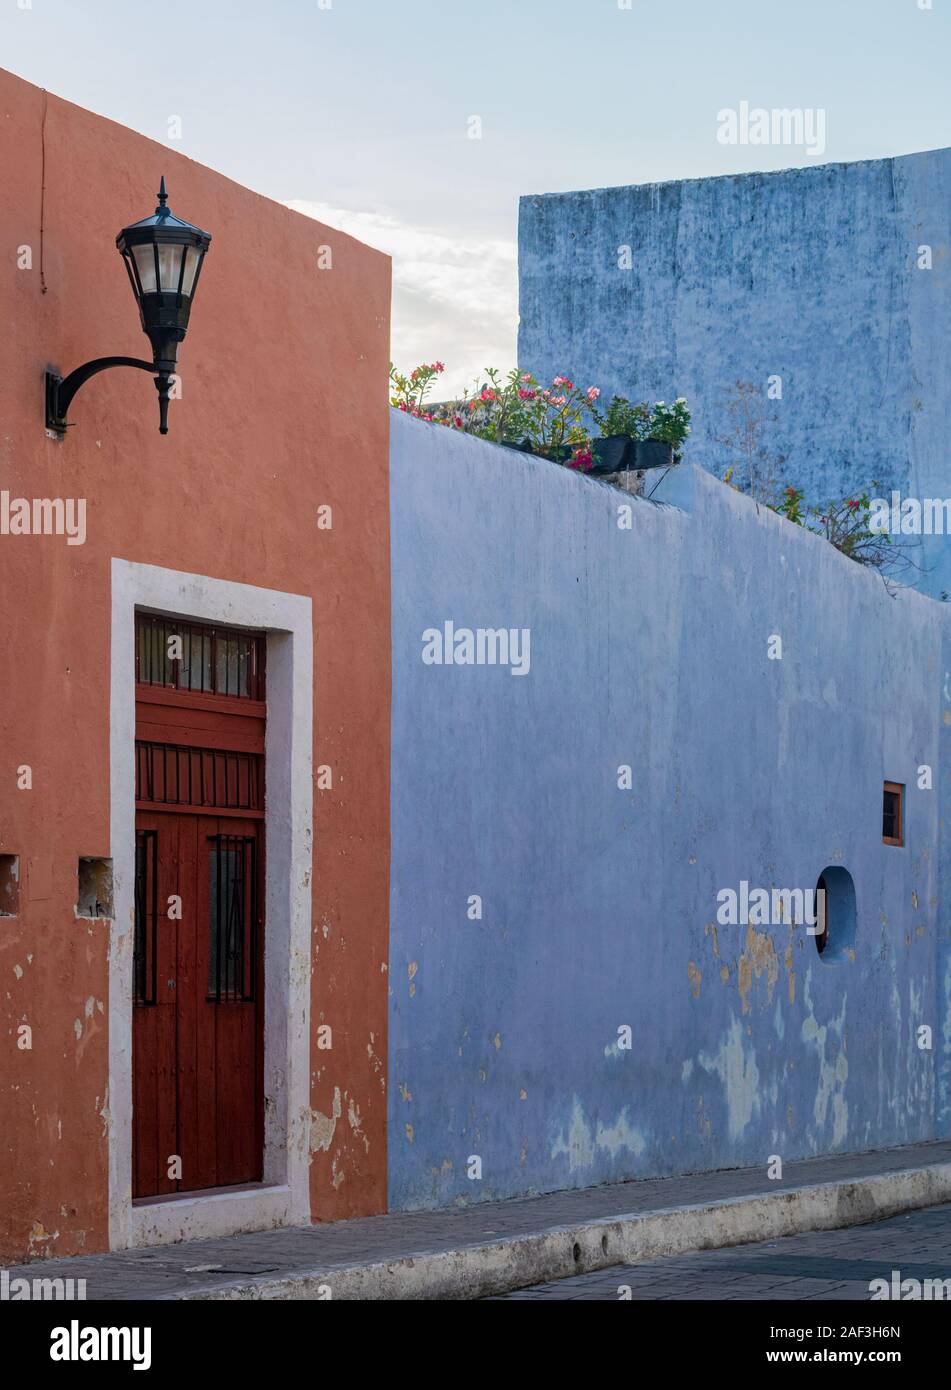 L'orange et le bleu, des façades de bâtiment colonial coloré à Campeche, Yucatan, Mexique. Banque D'Images